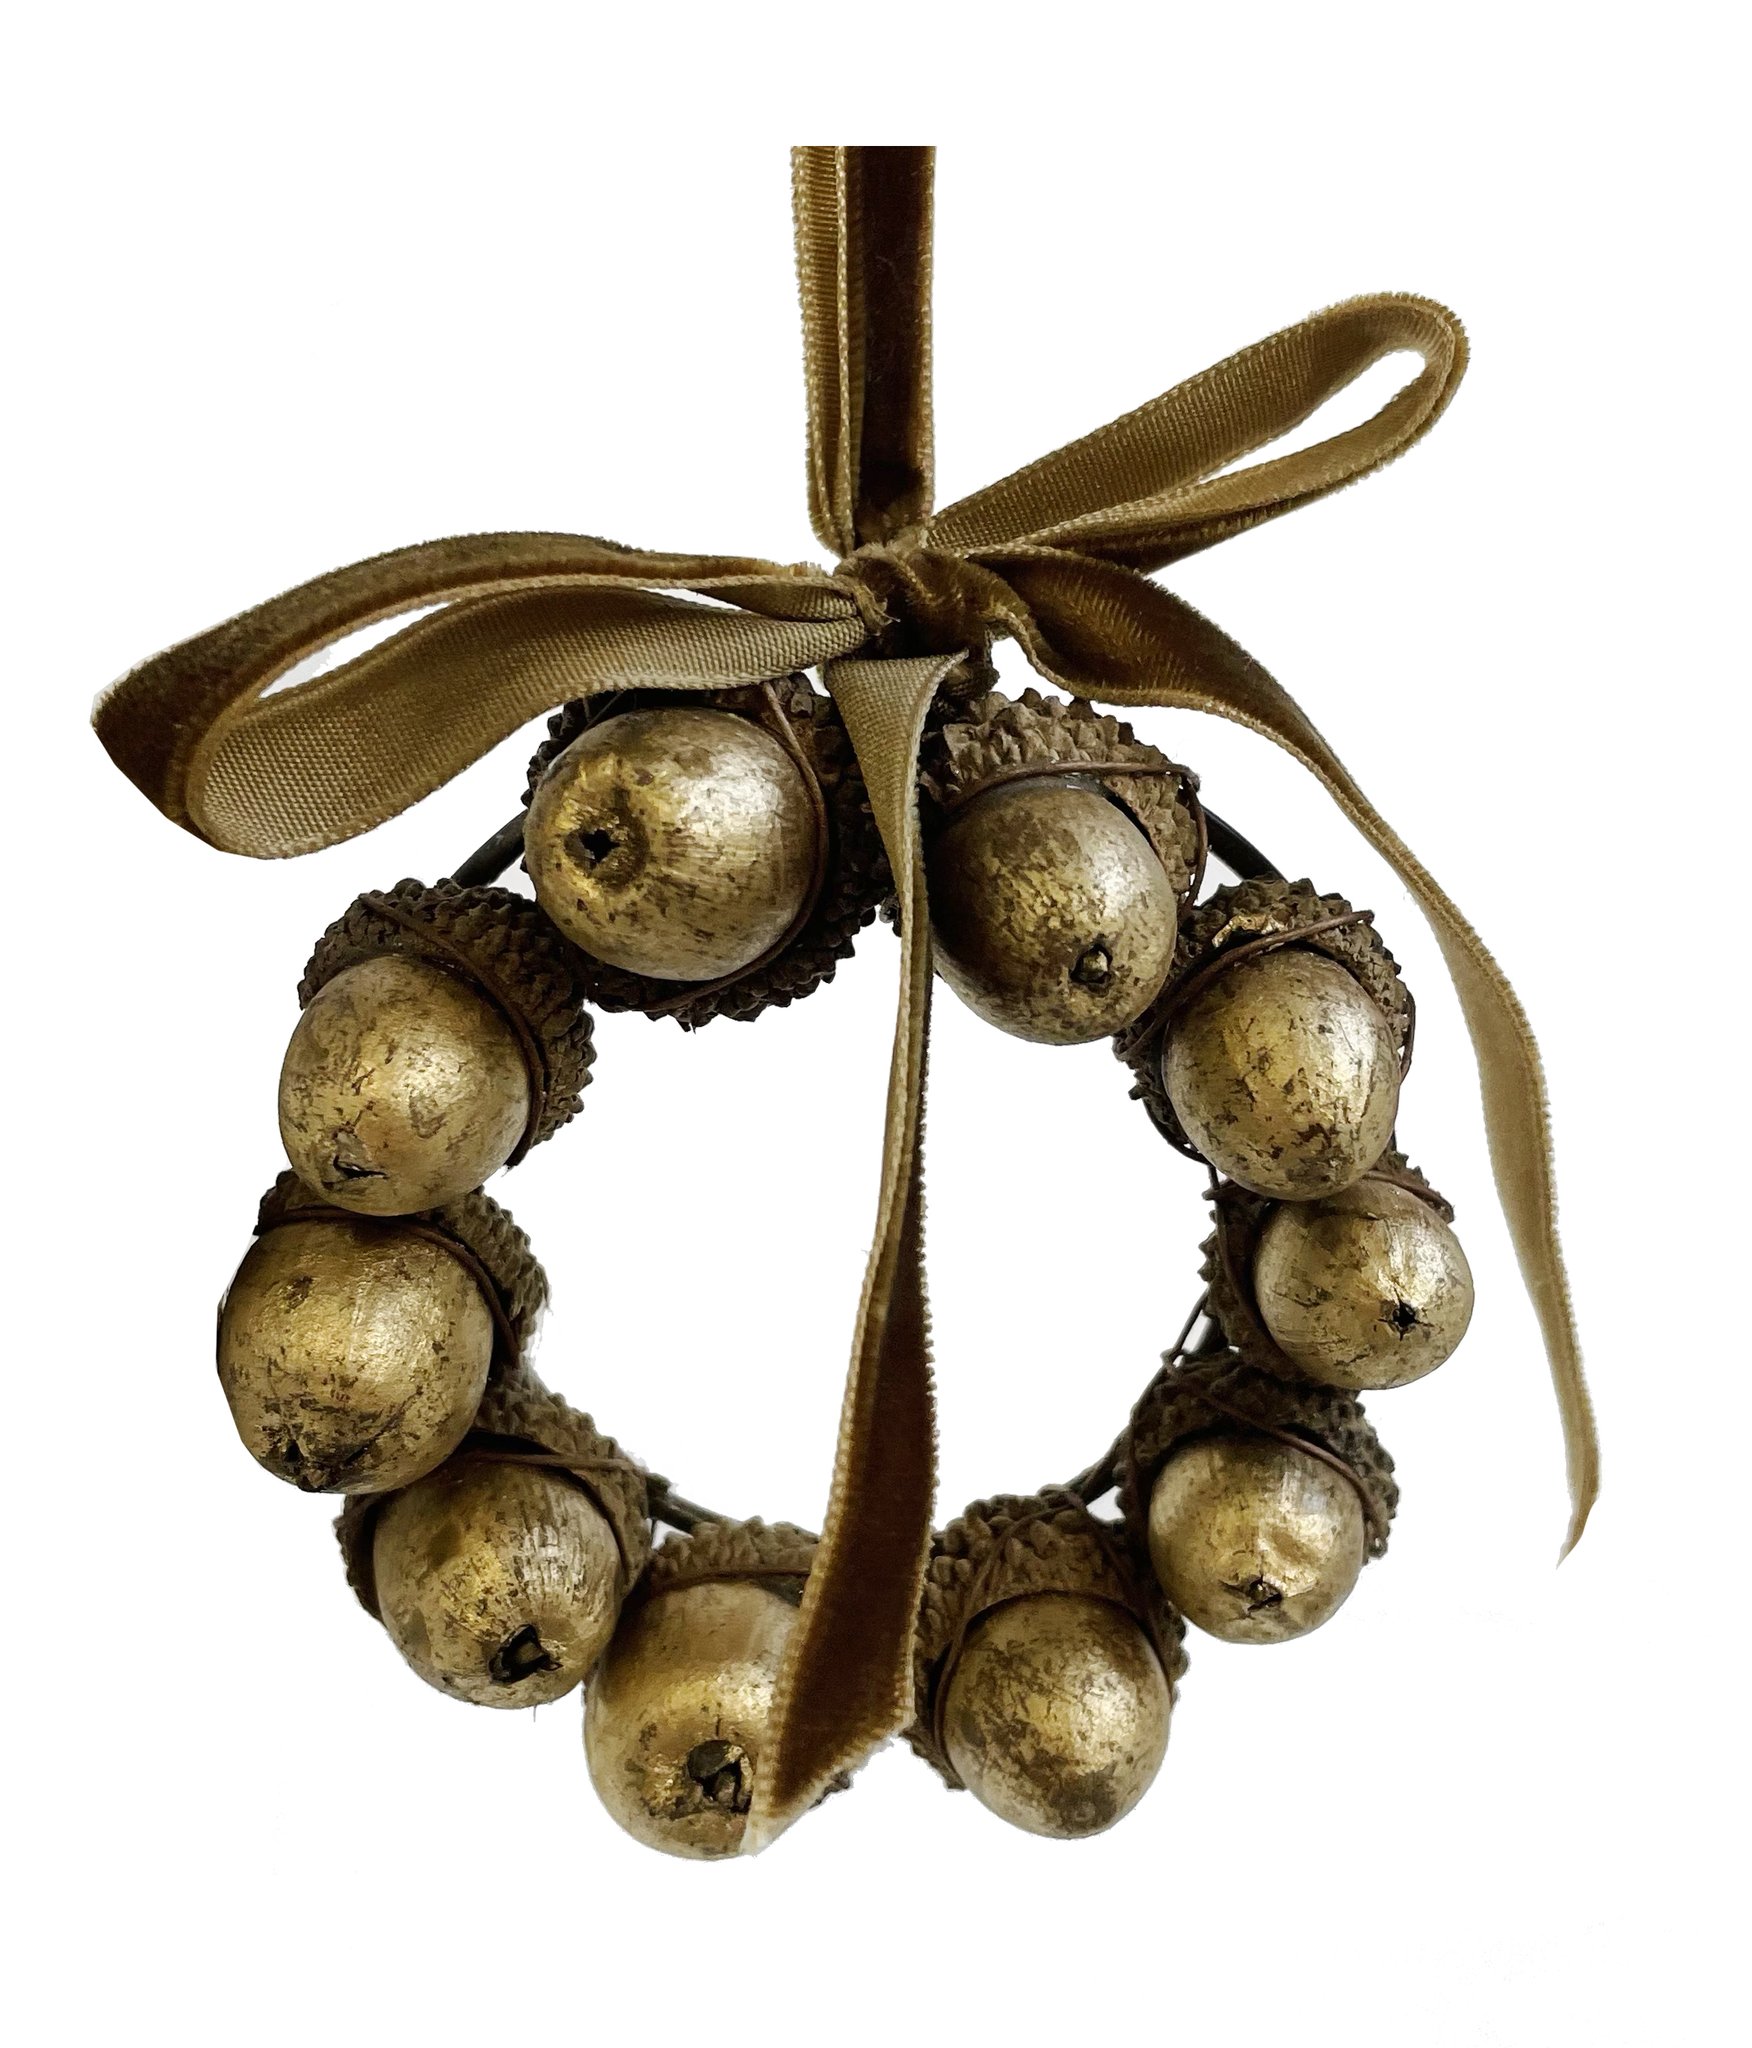 shishi-gold-acorns-wreath-wvelvet-bow-8cm